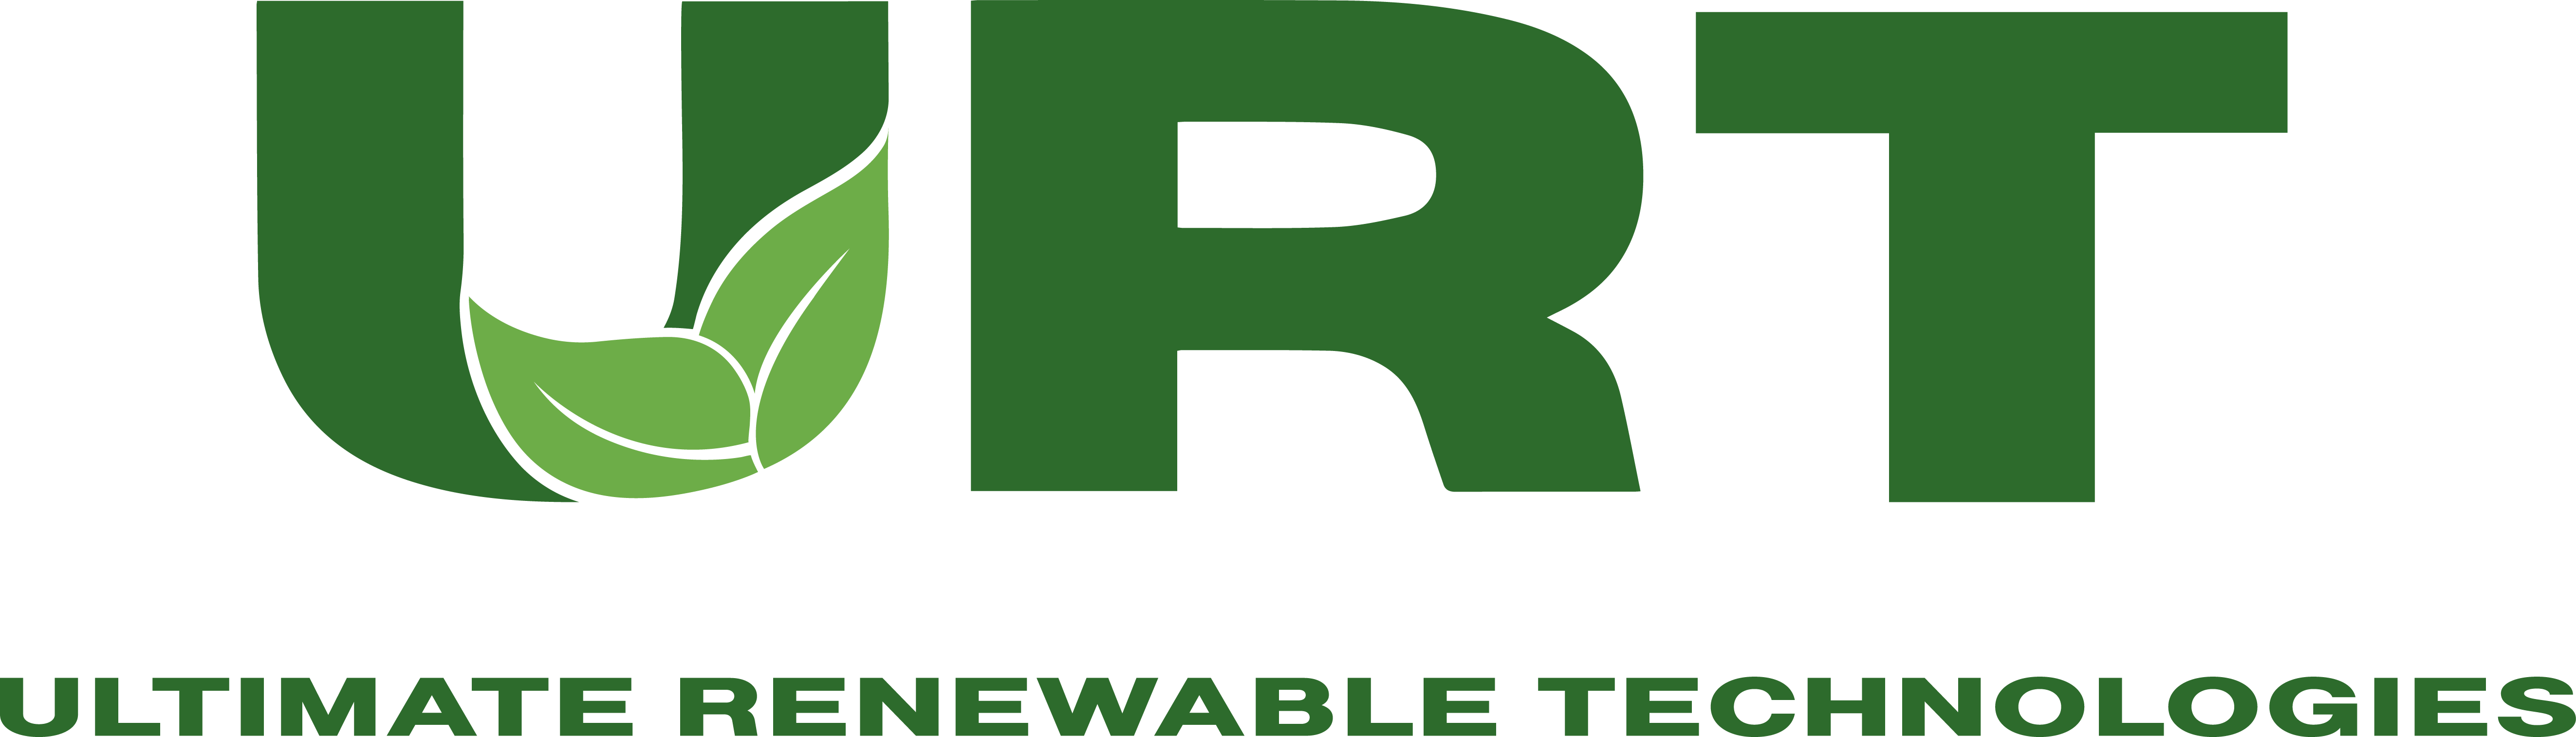 Ultimate Renewable Technologies